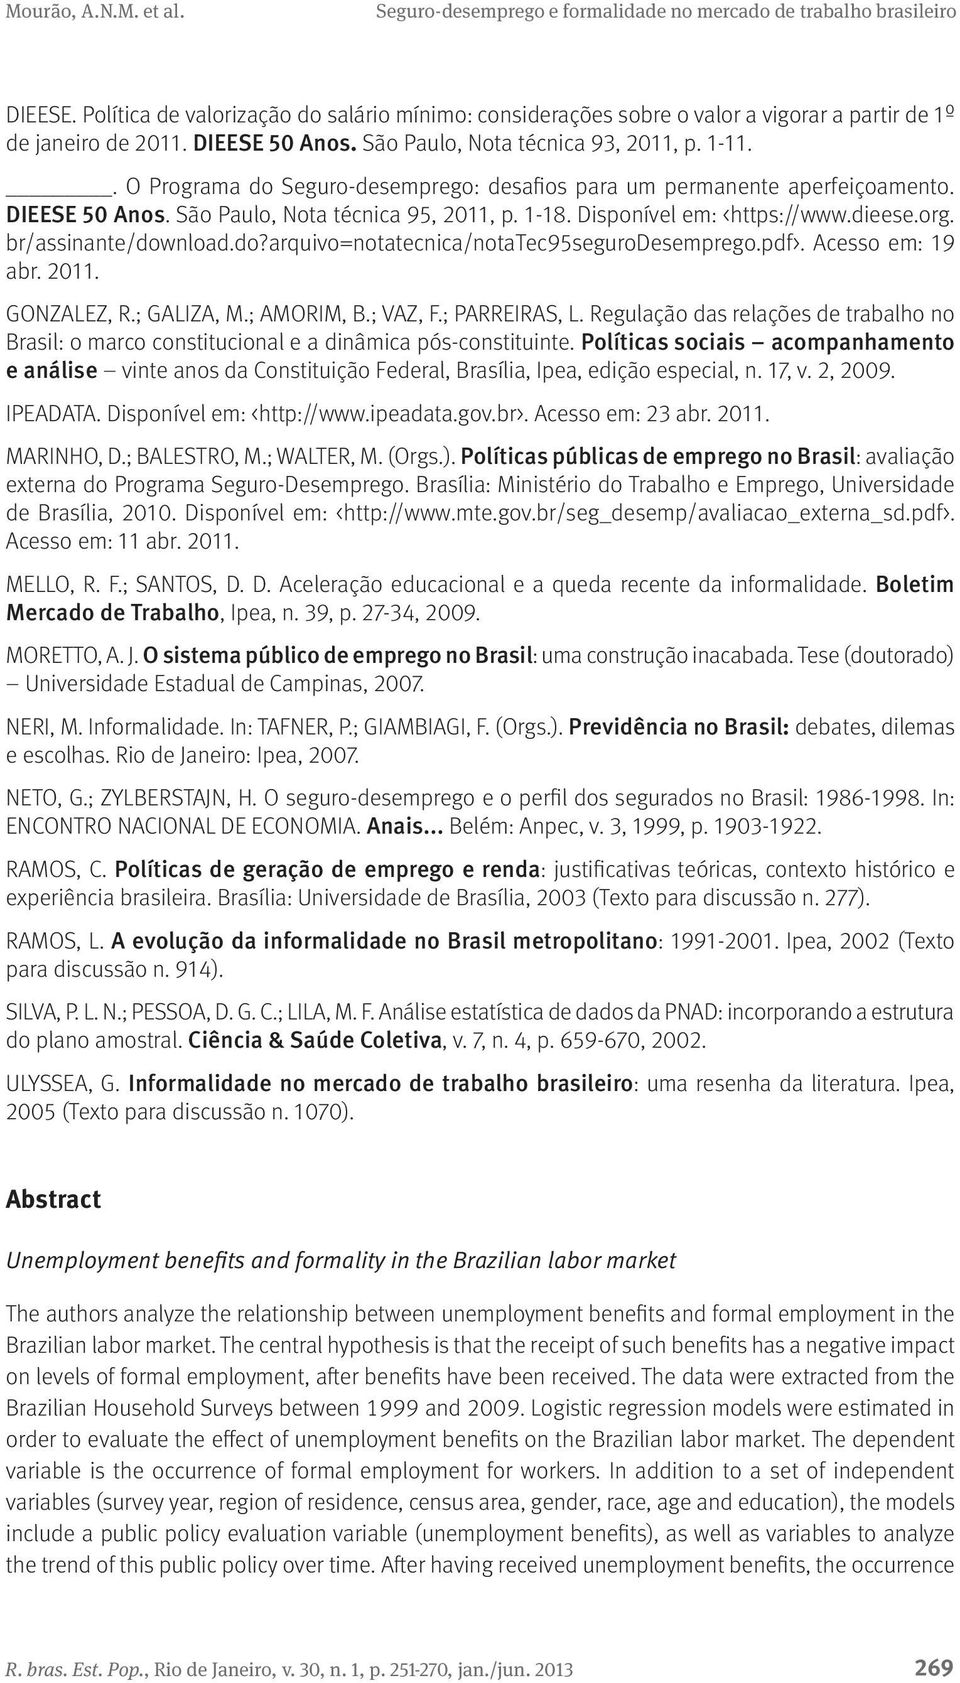 br/assinante/download.do?arquivo=notatecnica/notatec95segurodesemprego.pdf>. Acesso em: 19 abr. 2011. GONZALEZ, R.; GALIZA, M.; AMORIM, B.; VAZ, F.; PARREIRAS, L.